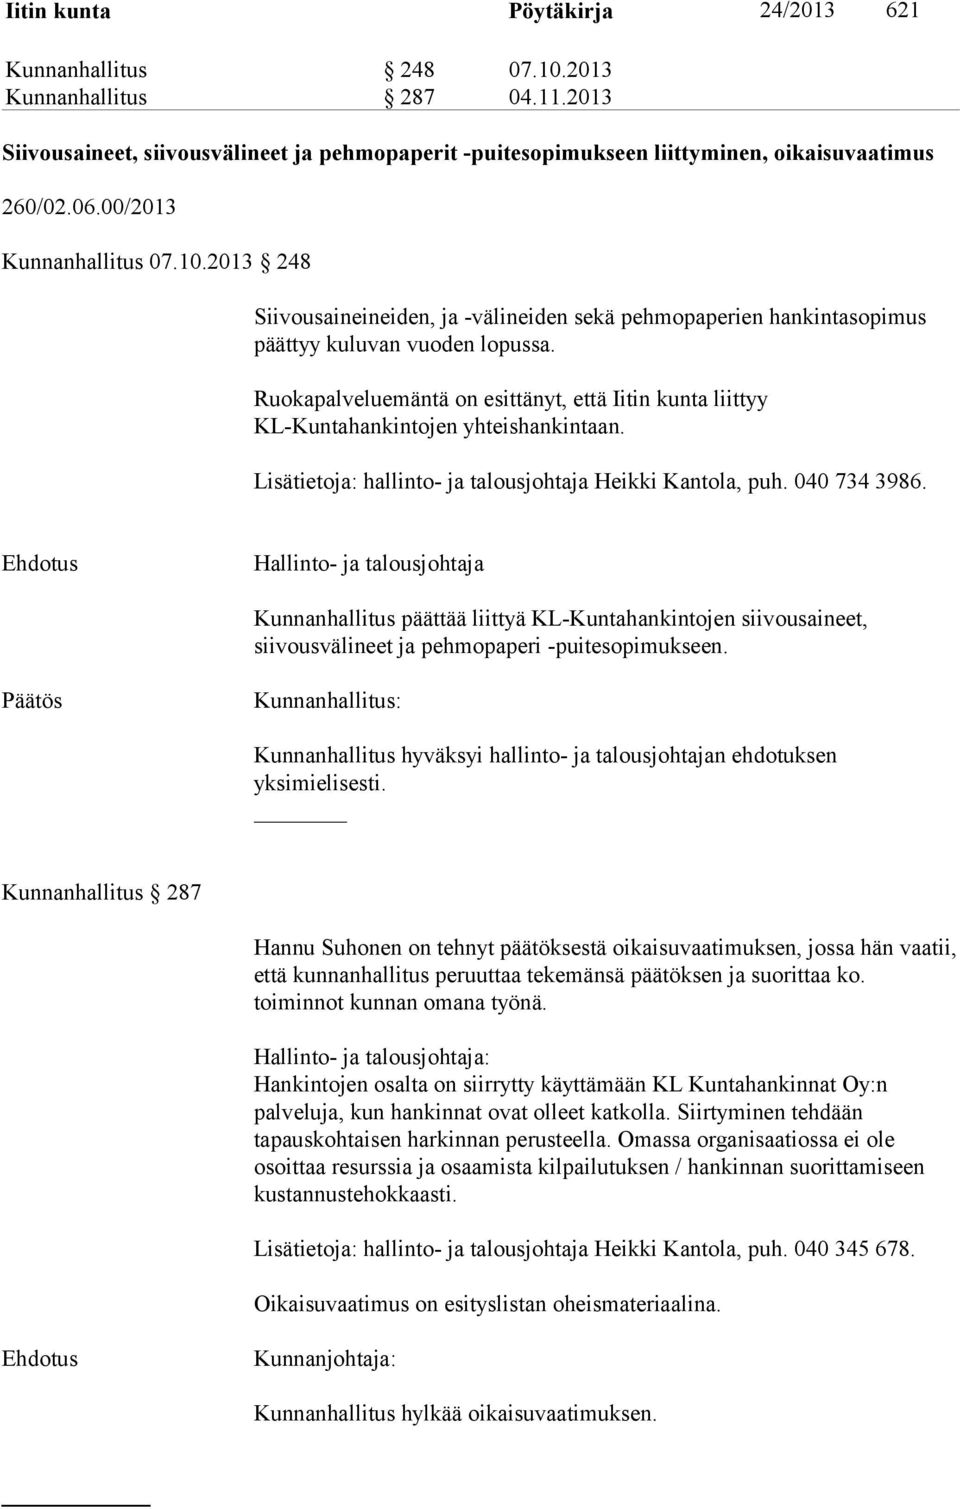 Ruokapalveluemäntä on esittänyt, että Iitin kunta liittyy KL-Kuntahankintojen yhteishankintaan. Lisätietoja: hallinto- ja talousjohtaja Heikki Kantola, puh. 040 734 3986.